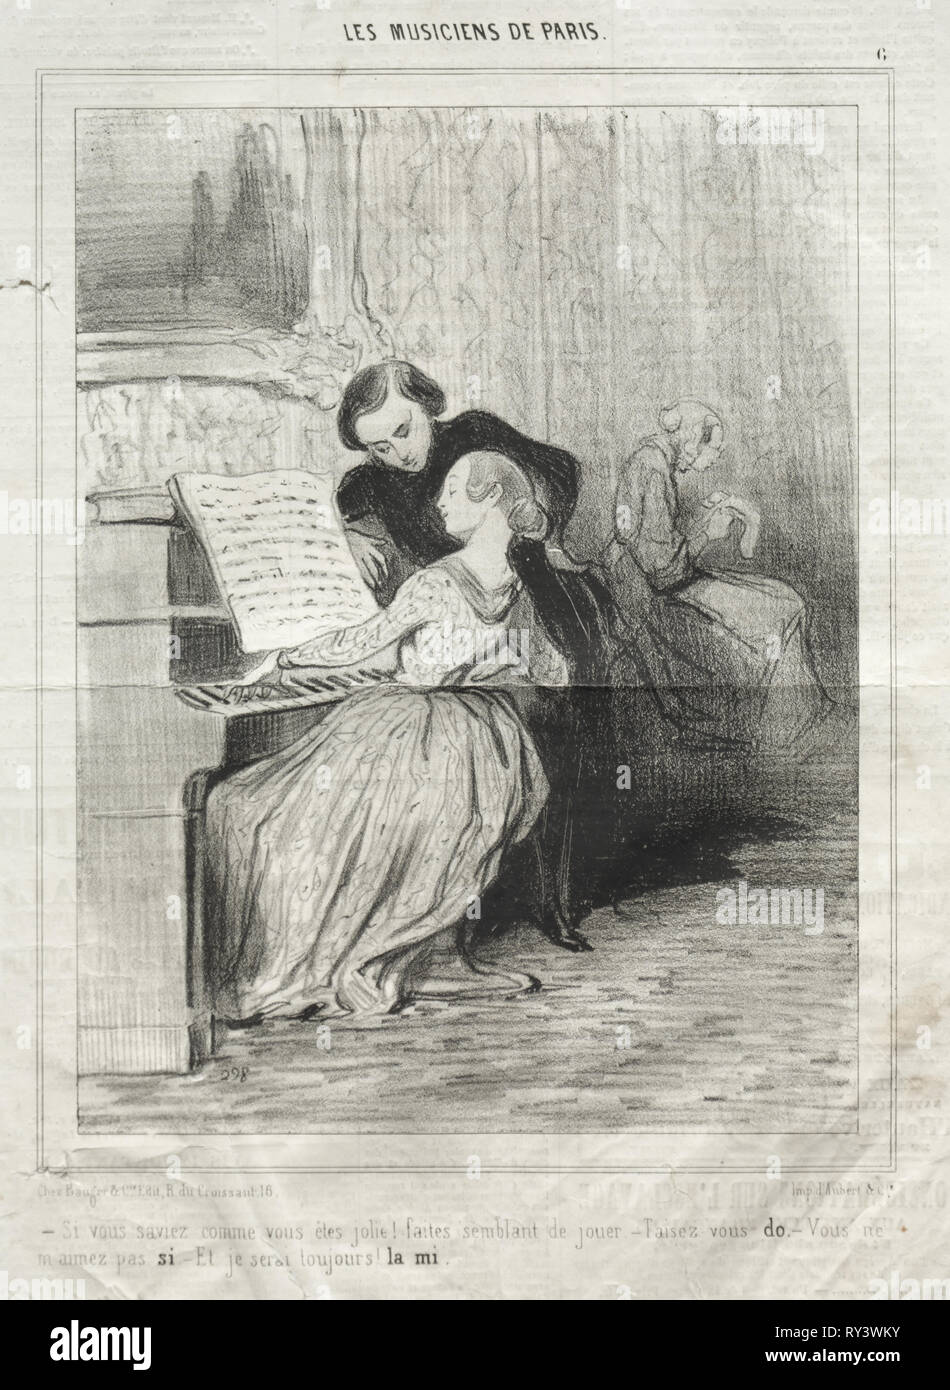 Publié dans Le Charivari (pas du 6 mars 1841) : les musiciens de Paris, planche 6 : Si vous saviez comment vous êtes jolie !, 6 mars 1841. Honoré Daumier (Français, 1808-1879), Aubert. Fiche technique : Lithographie ; 36,4 x 24,8 cm (14 3/4 x 9 5/16 in.) ; Image : 24 x 18,2 cm (9 7/16 x 7 3/16 in Banque D'Images